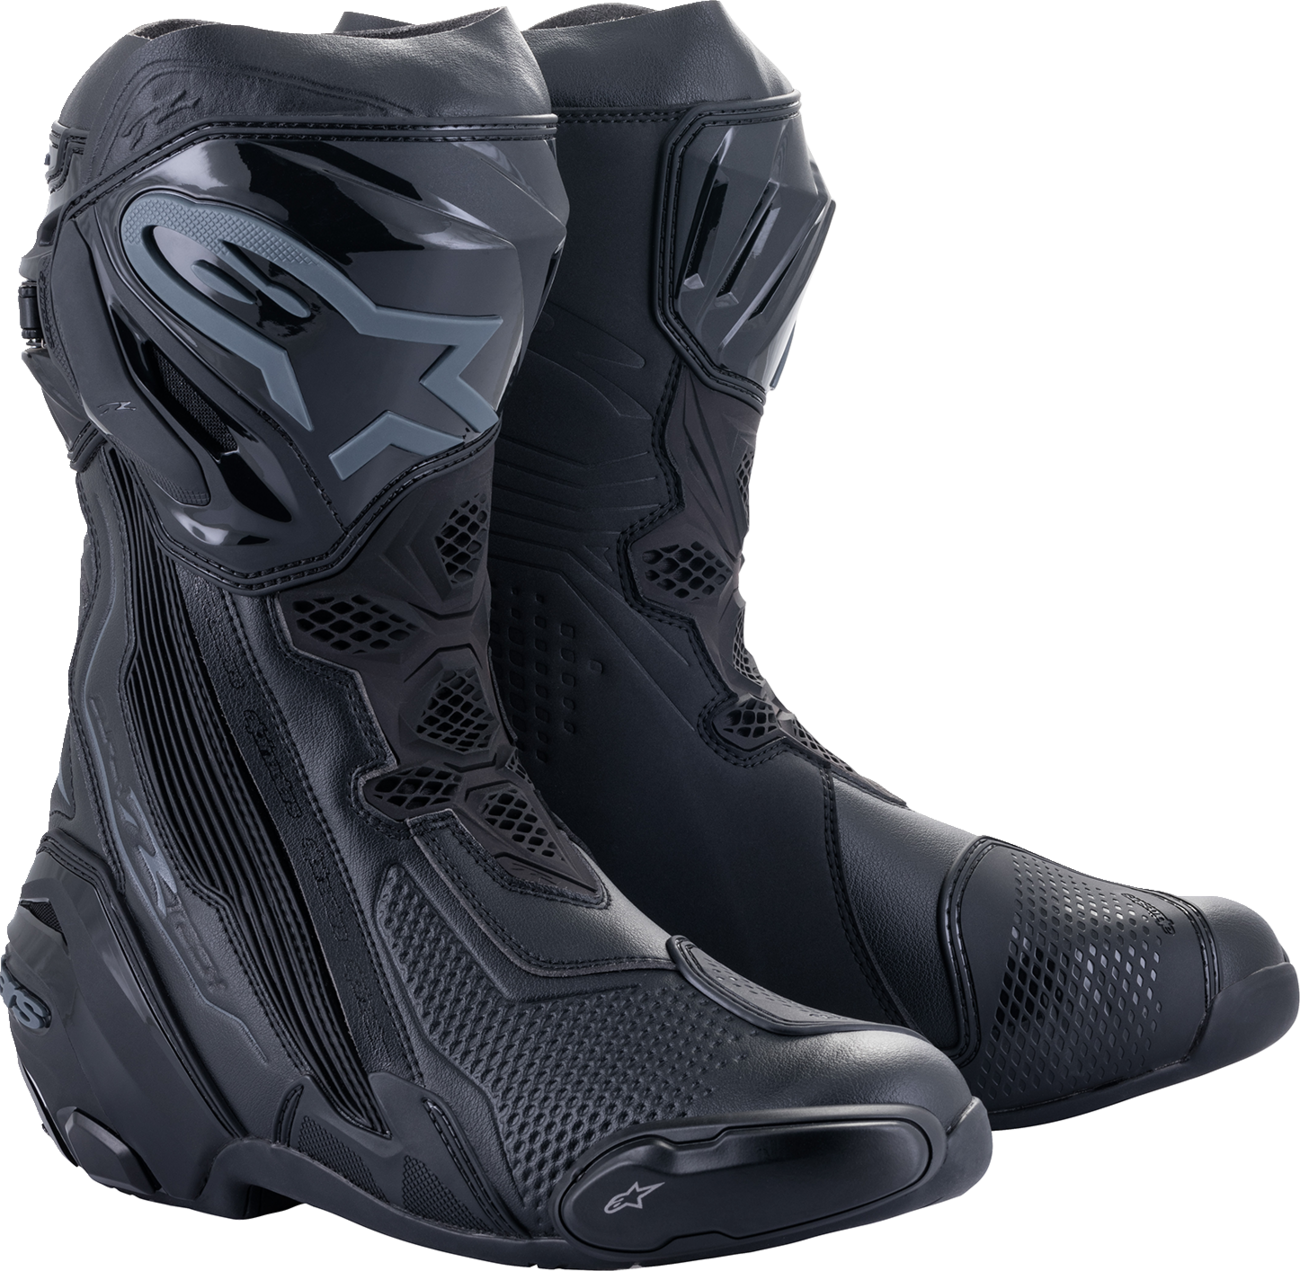 ALPINESTARS Supertech R Boots - Black - US 10.5 / EU 45 2220021-1100-45